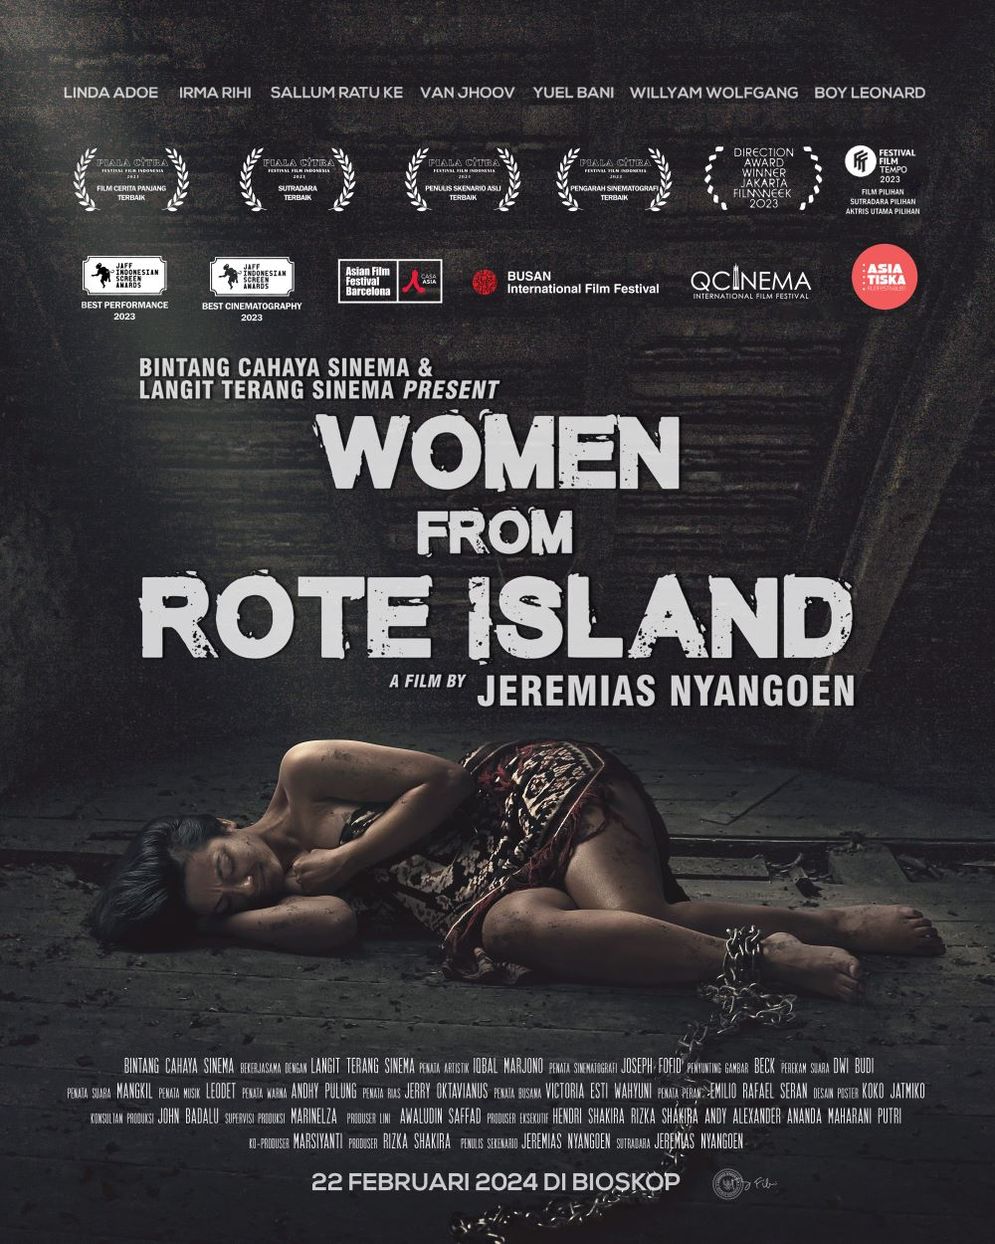 Cerita Tragedi Perempuan Buruh Migran dan Bangkit Berdaya hadir dalam Film Women from Rote Island